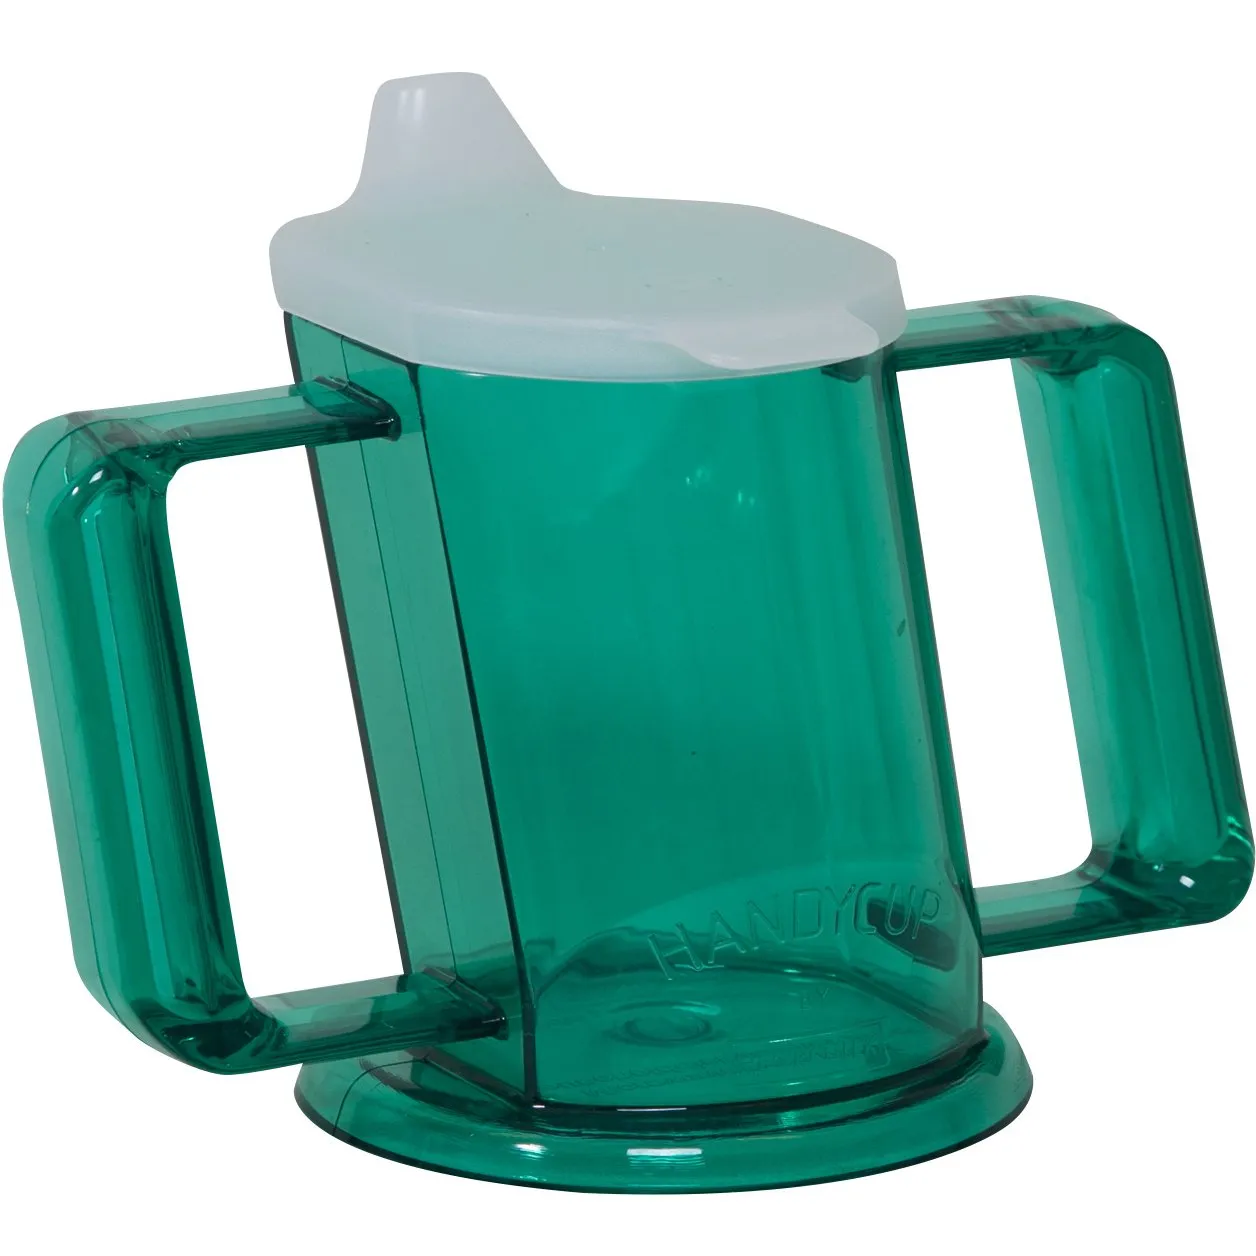 Uitwerpselen kever Bemiddelaar HandyCup drinkbeker kopen | Handy cup schuine beker Groen